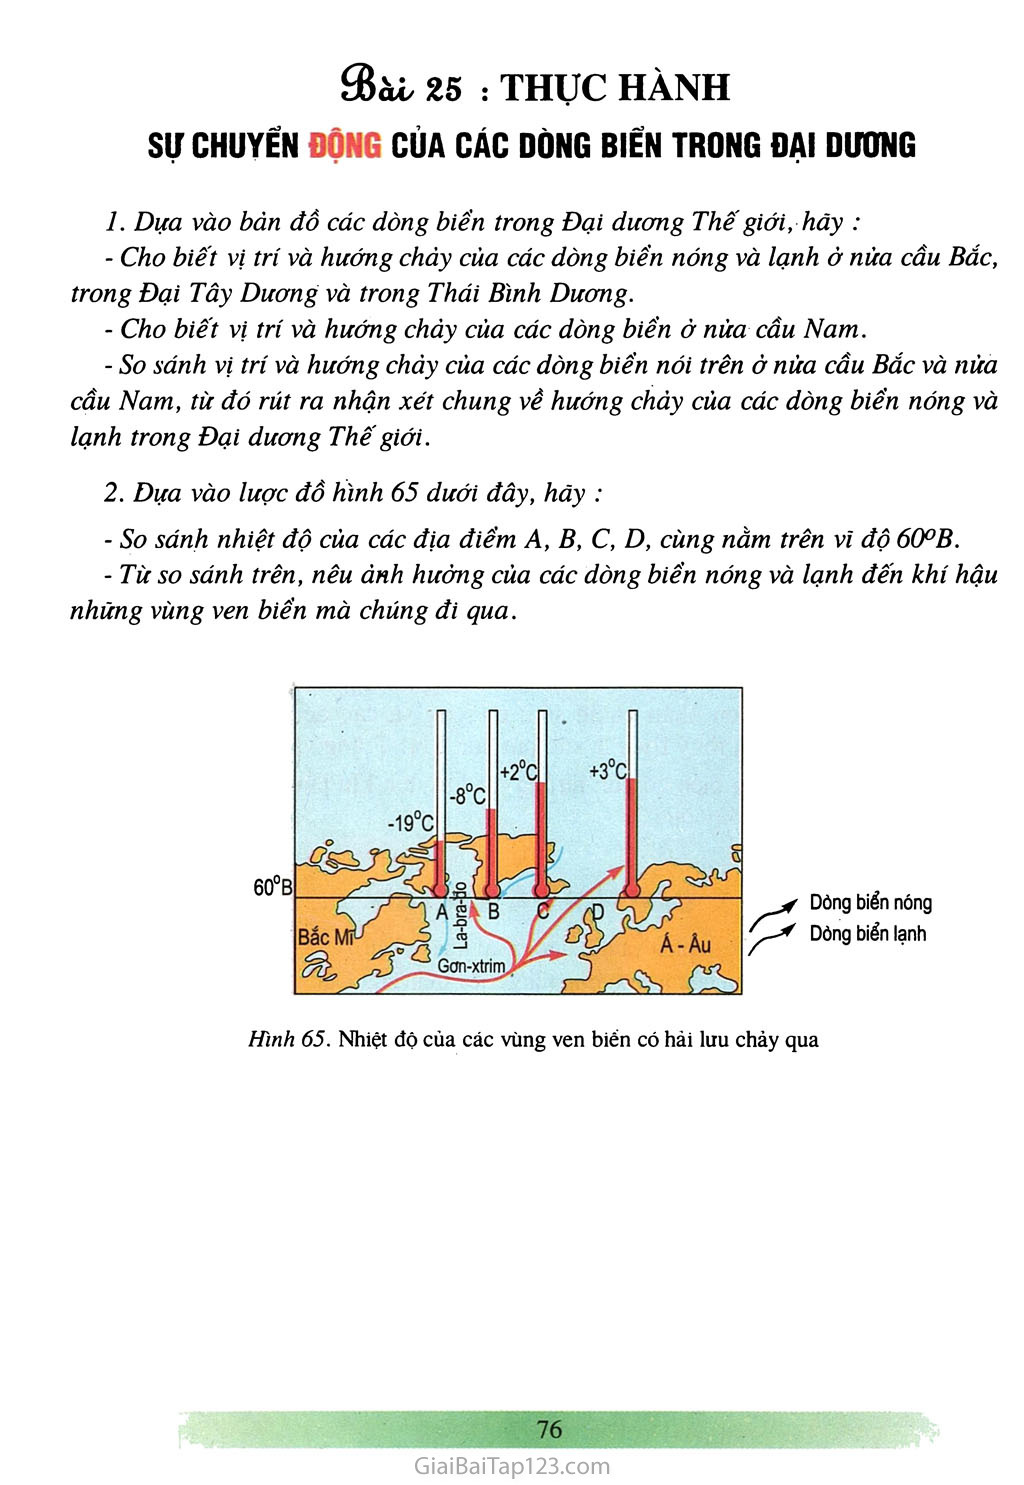 Bài 25: Thực hành: Sự chuyển động của các dòng biển trong đại dương (1 tiết) trang 1